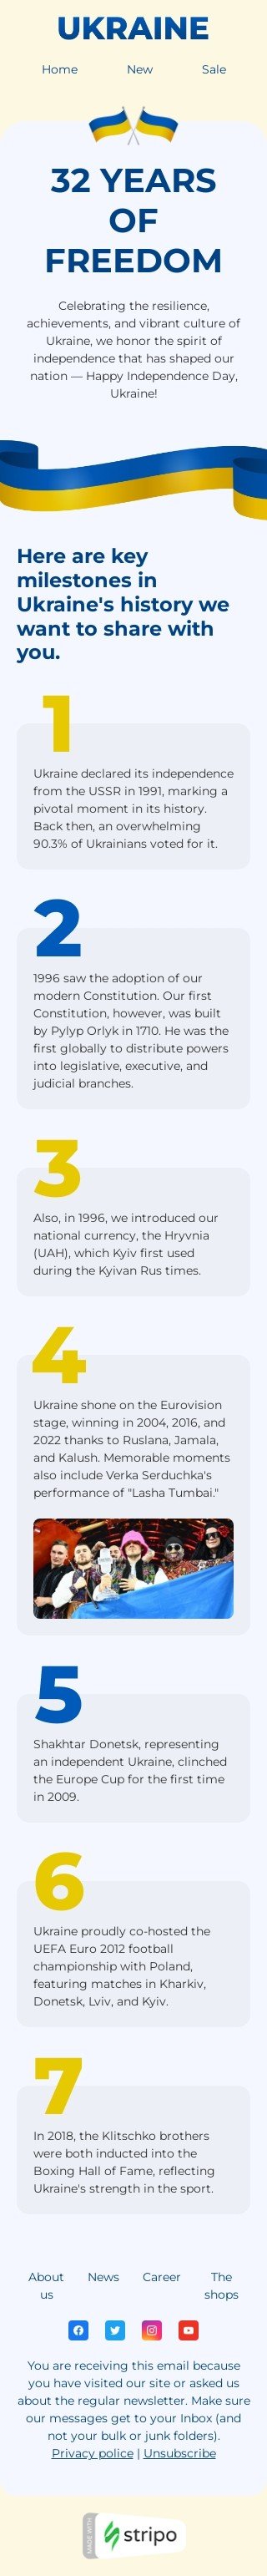 Шаблон листа до свята День Незалежності України «32 роки свободи» для індустрії «Дизайн шаблонів для некомерційних email-кампаній» мобільний вигляд